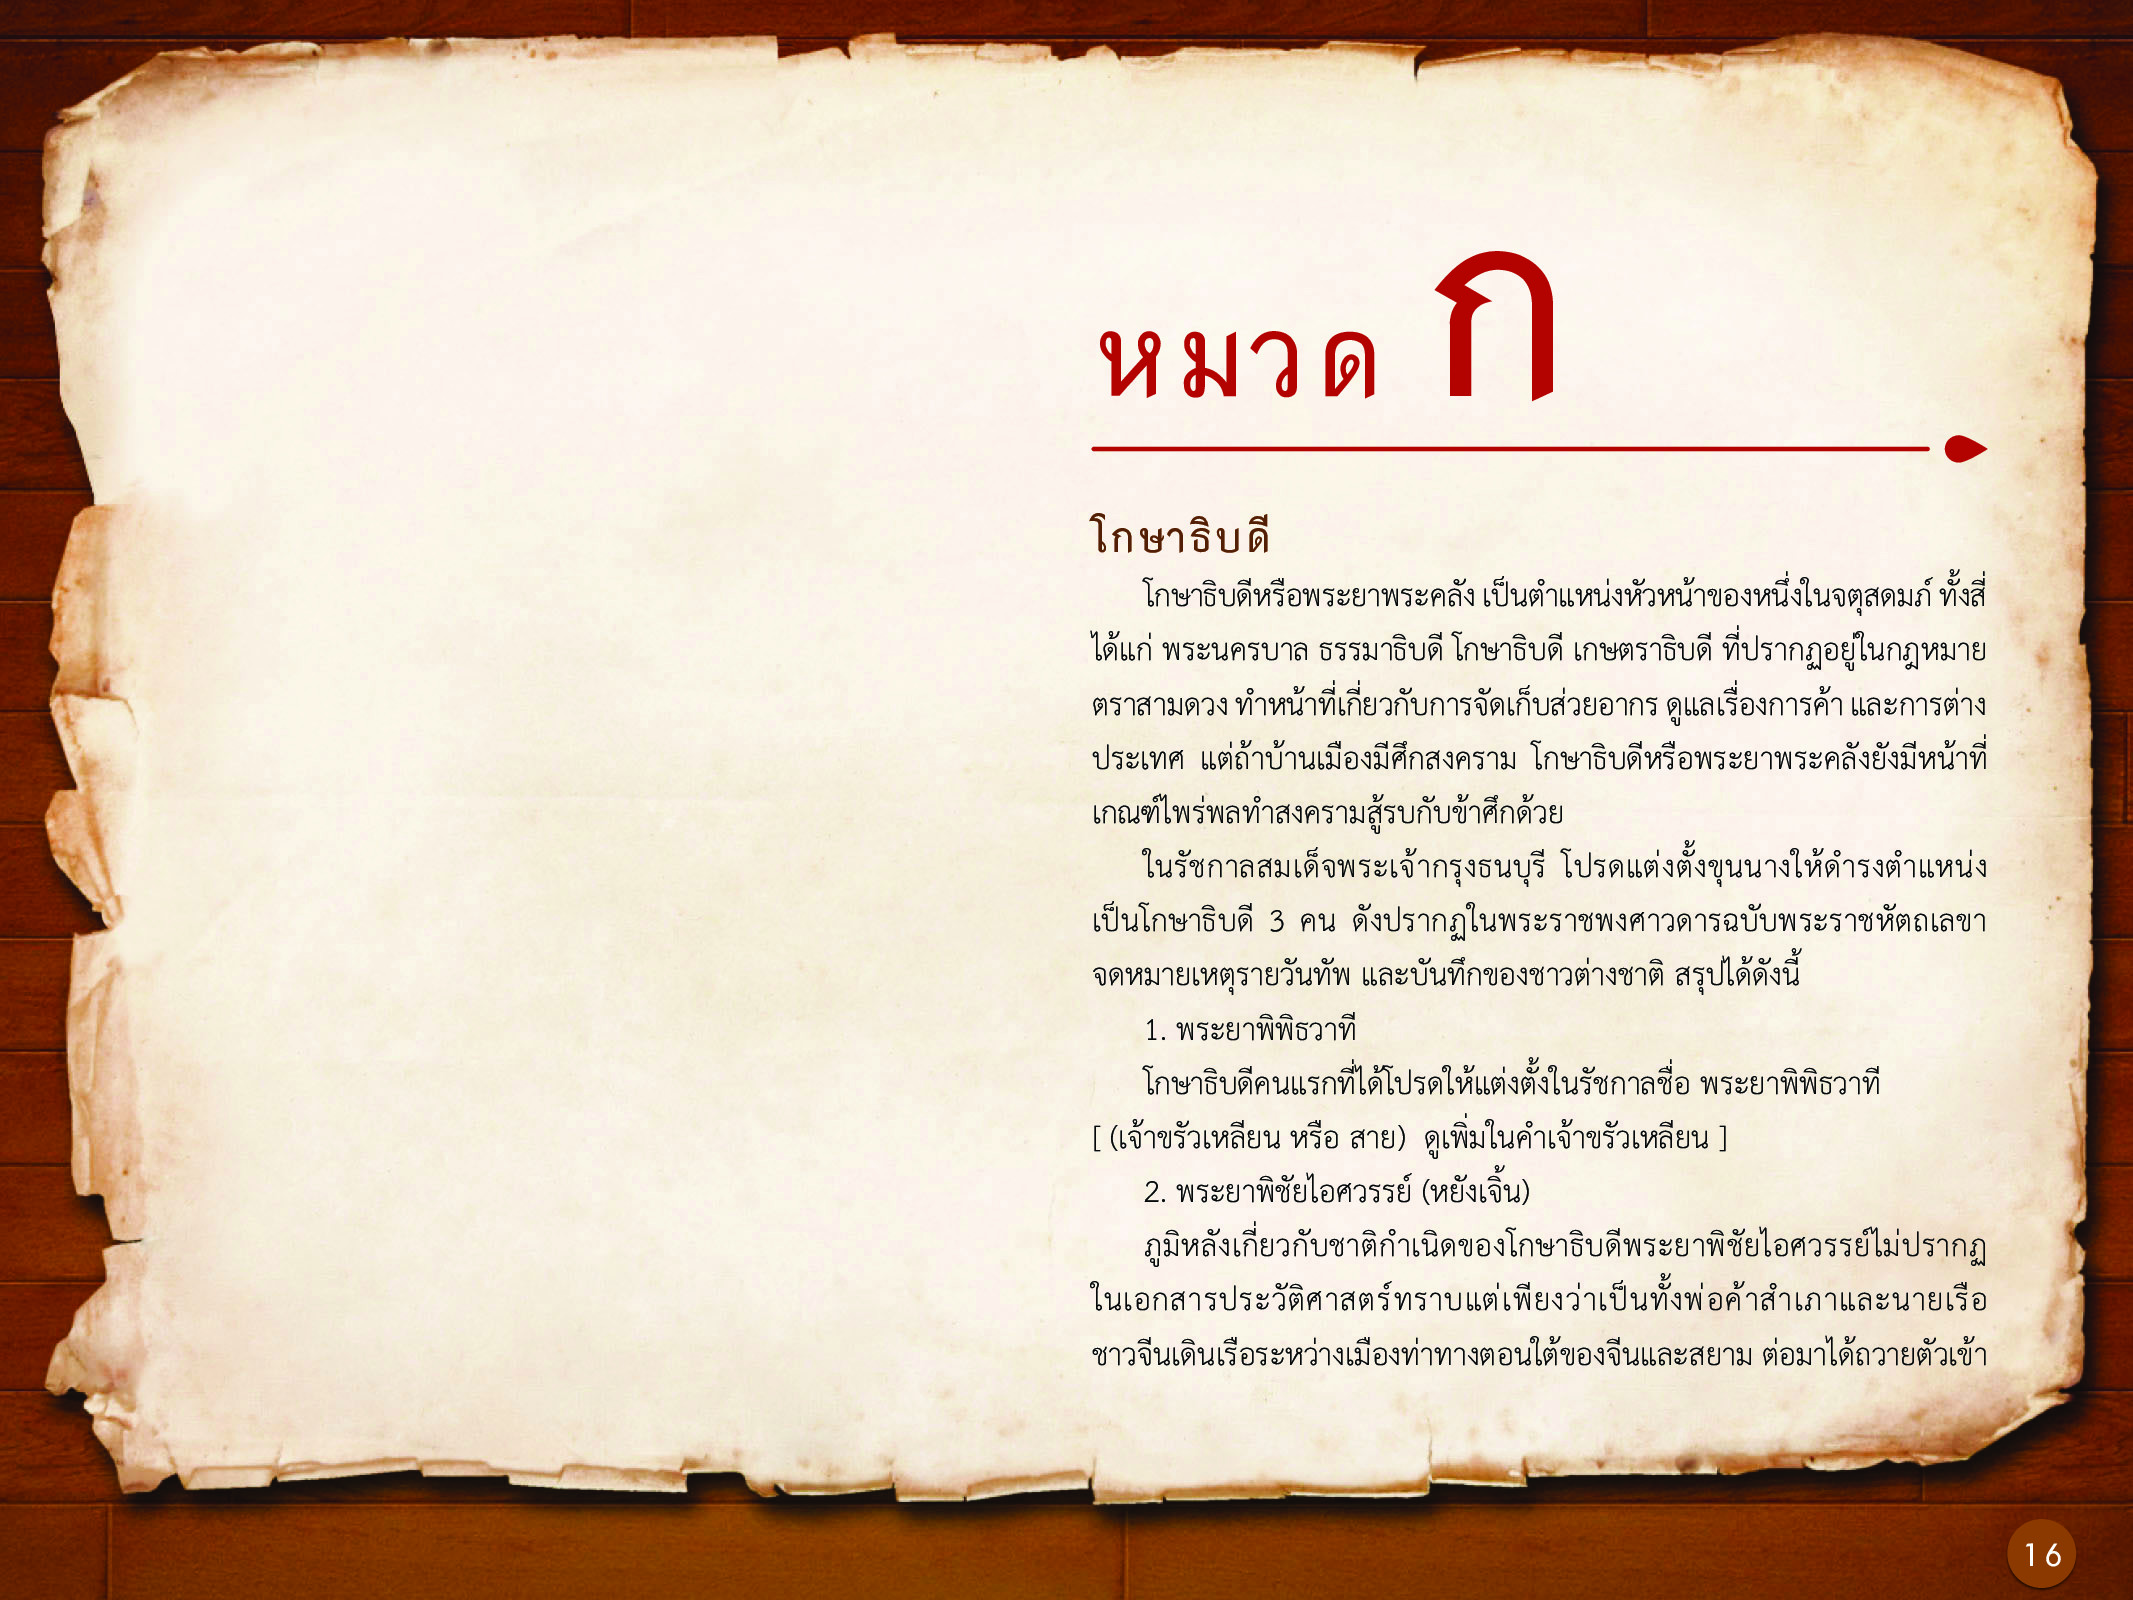 ประวัติศาสตร์กรุงธนบุรี ./images/history_dhonburi/16.jpg